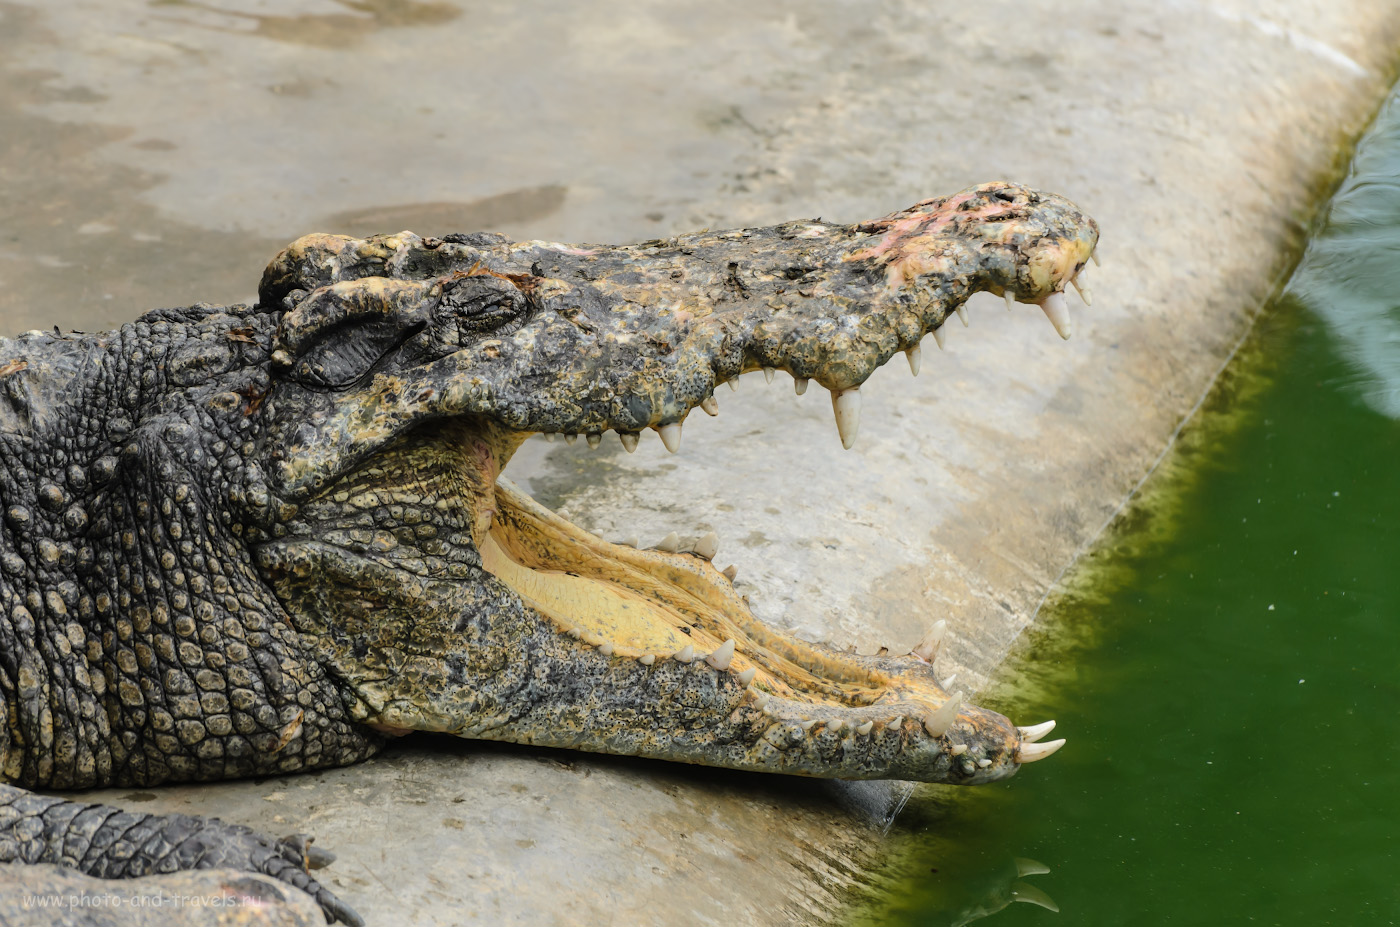 Фотография 12. Фотоохота на крокодилов. Отзыв об экскурсии на крокодиловую ферму в Парке миллионолетних камней. Отдых в Паттайе самостоятельно. Вторая поездка в Таиланд. 1/500, 5.6, 320, 195.